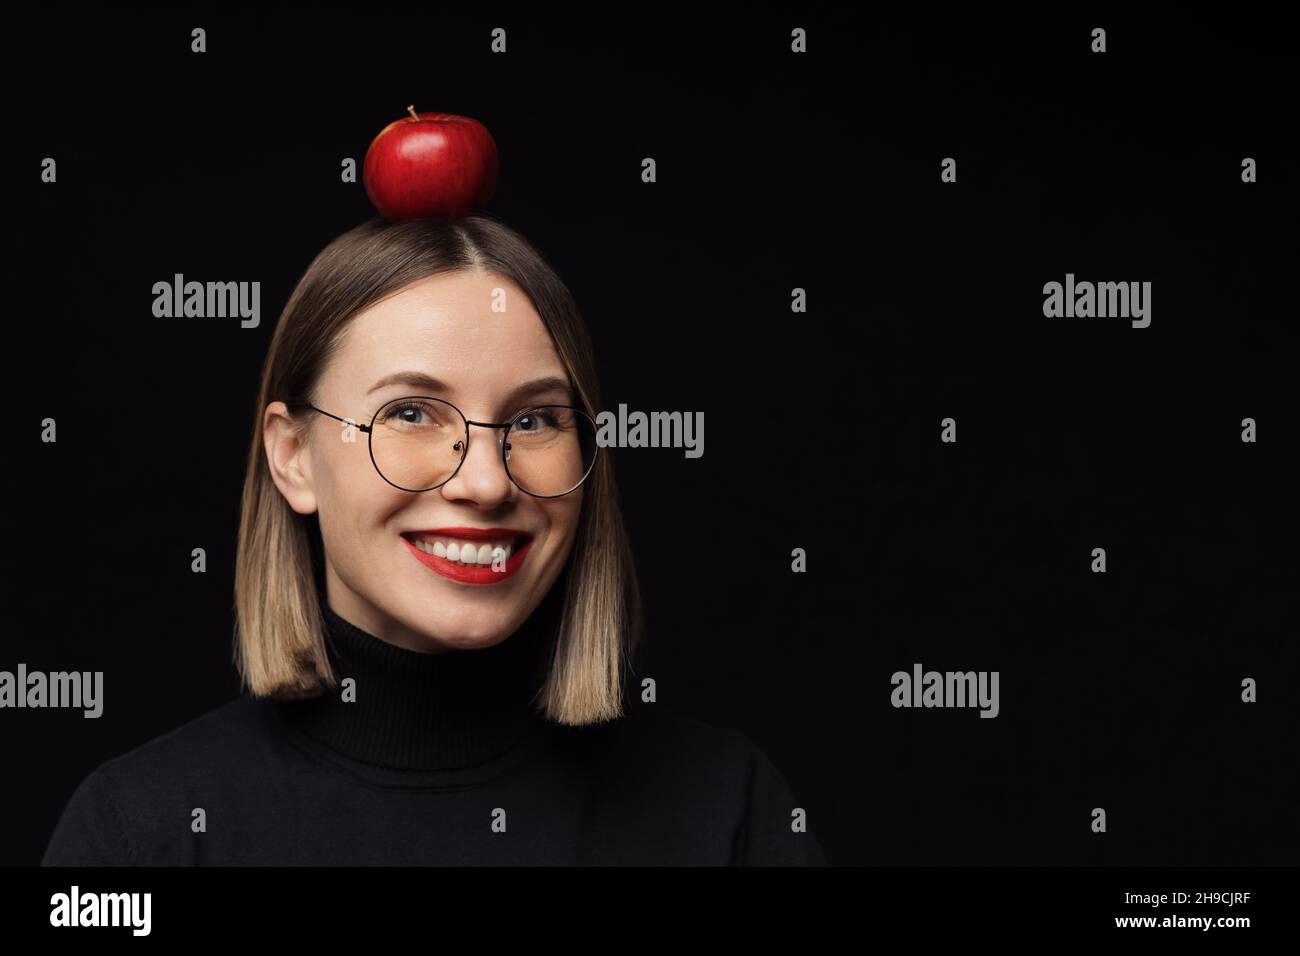 Gros plan sourire femme portrait portant des lunettes avec des cadres noirs, avec des lèvres rouges, regardant l'appareil photo avec une pomme rouge sur la tête sur fond noir maquette. Banque D'Images